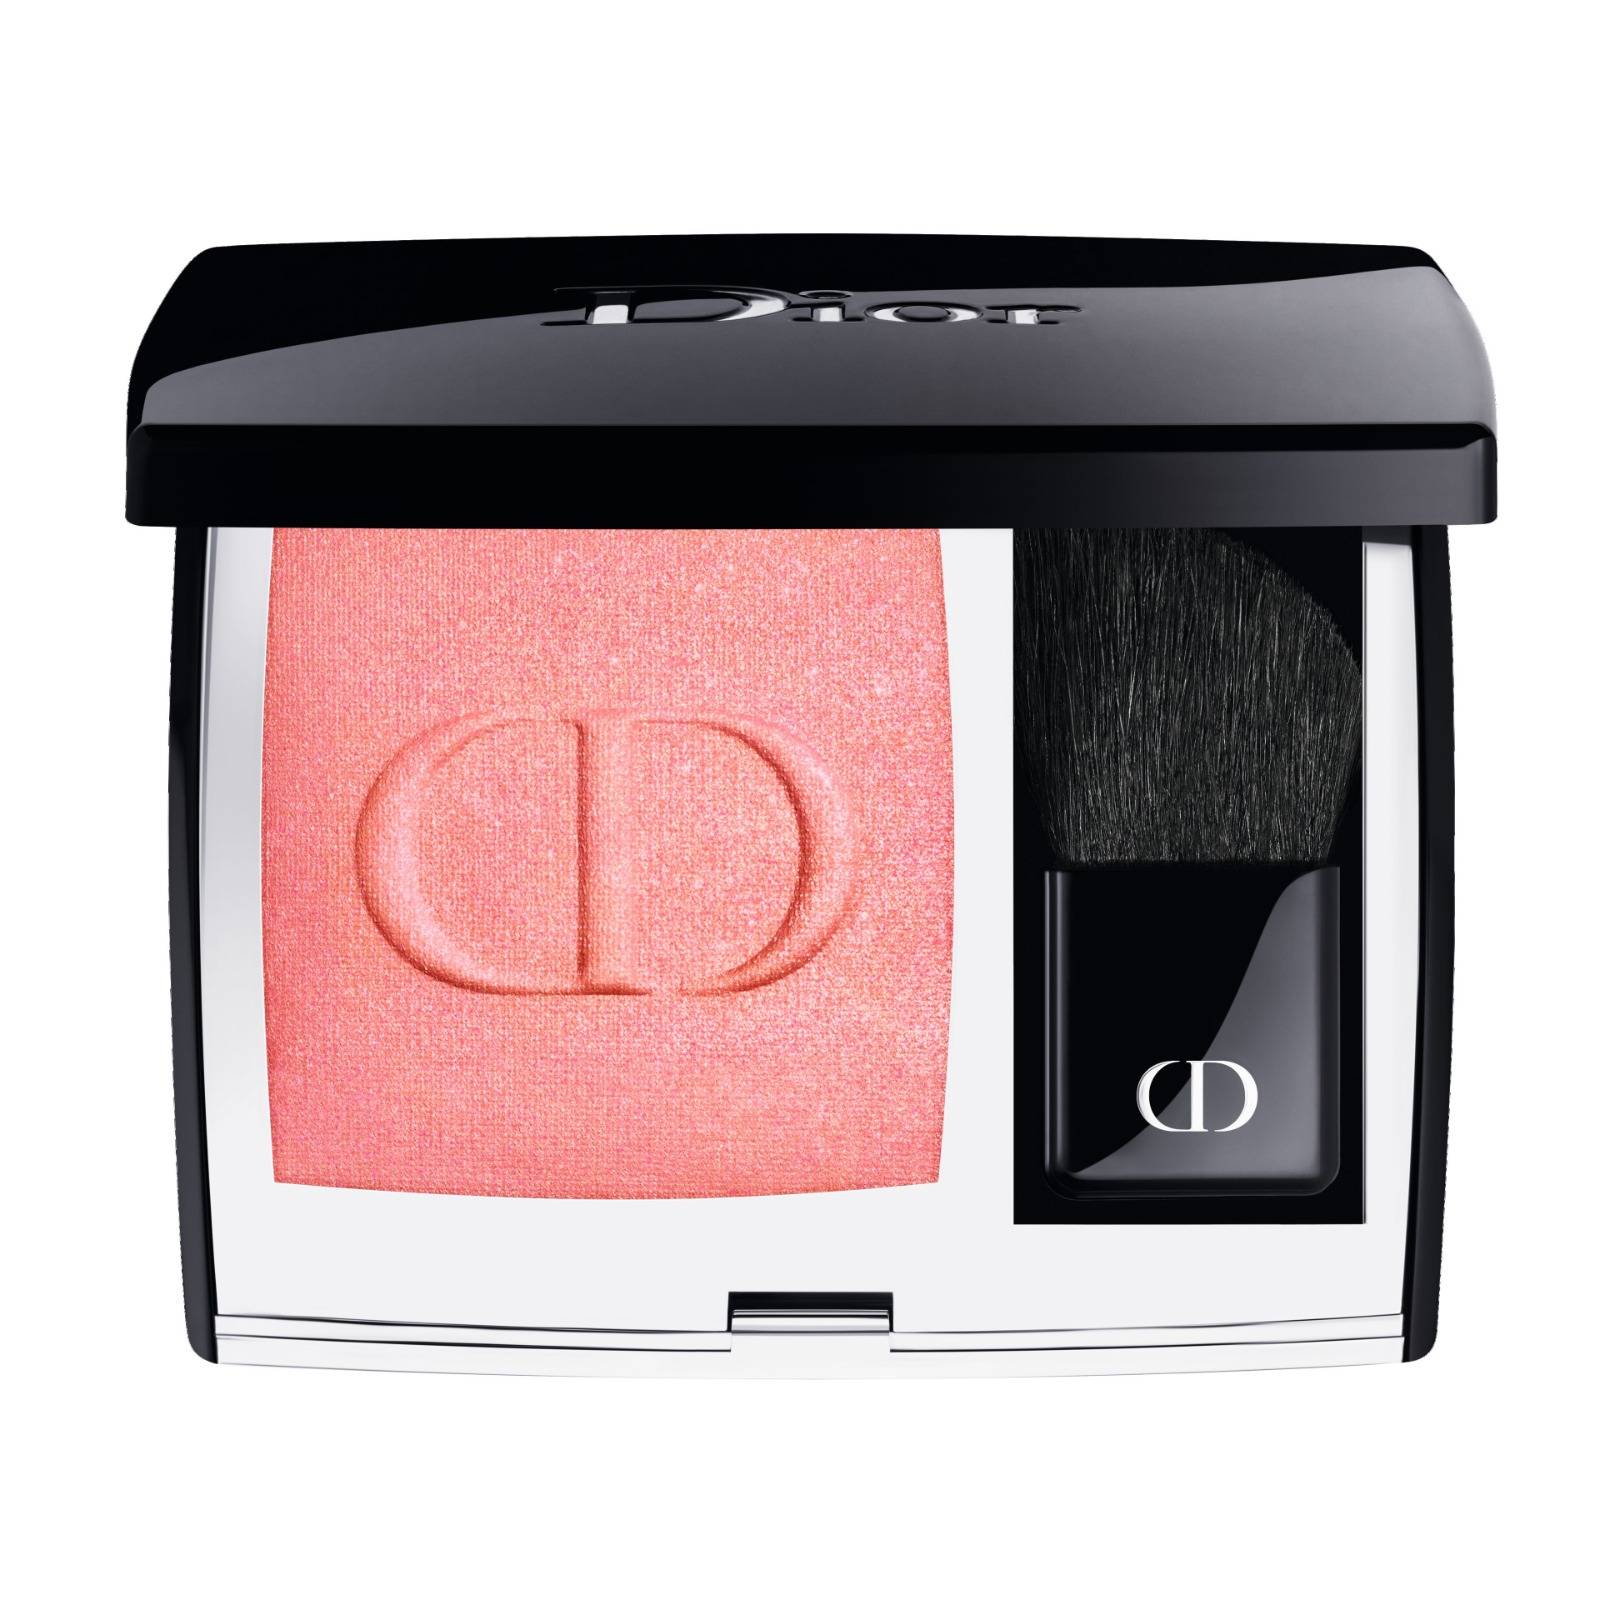 Dior重新演繹其經典的健康亮澤妝效胭脂， 藉著極高濃度色素粒子締造持久妝效。 其配方蘊含90%天然成分，給予肌膚全天候的舒適感。（圖片來源：Dior）